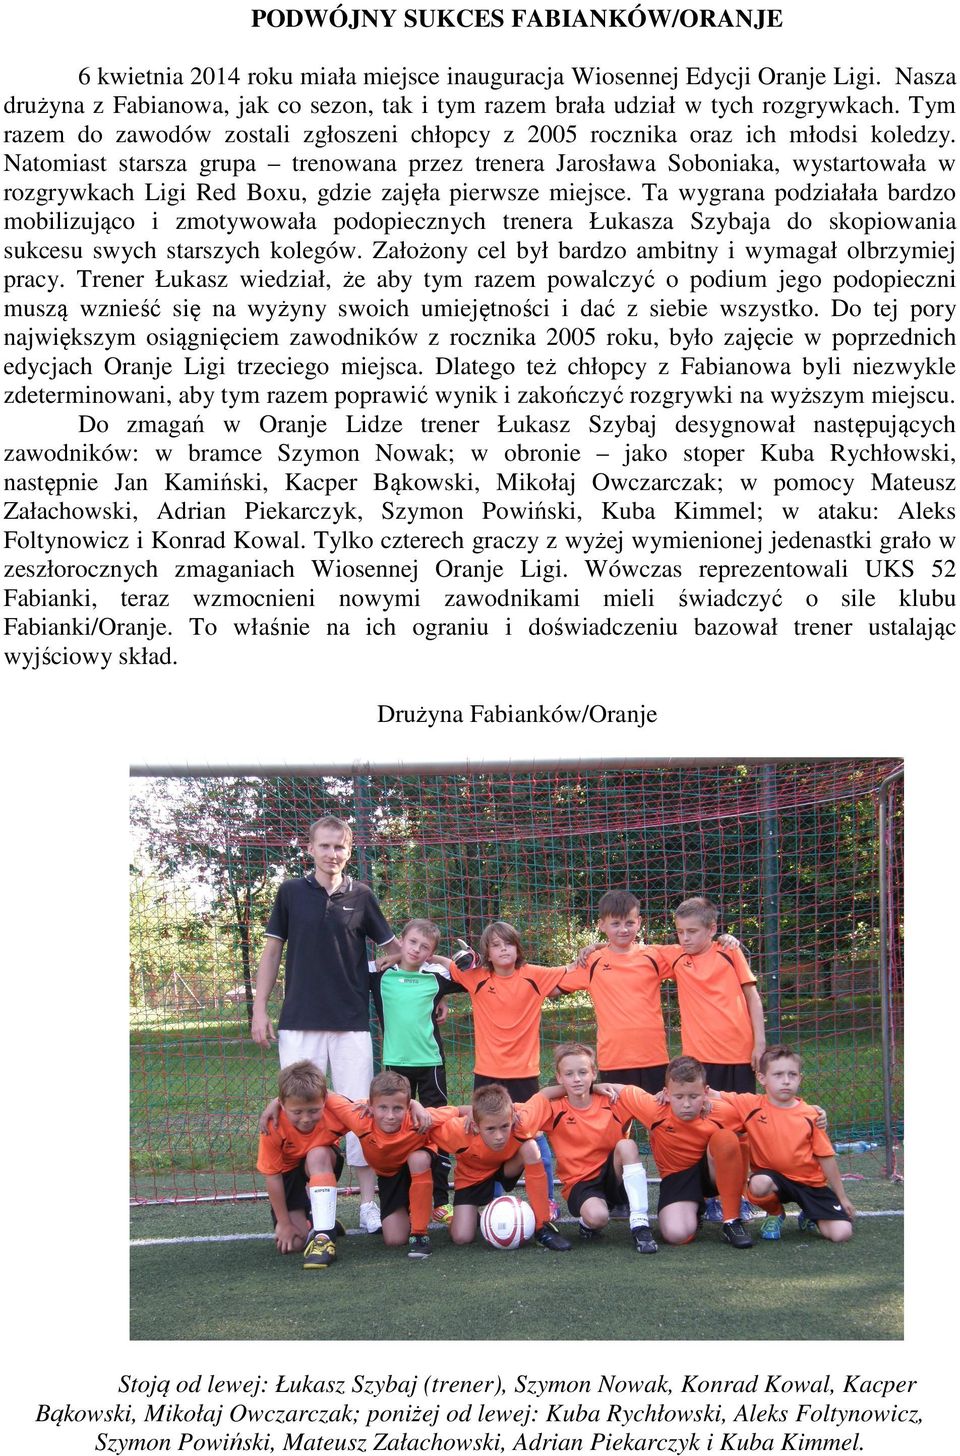 Natomiast starsza grupa trenowana przez trenera Jarosława Soboniaka, wystartowała w rozgrywkach Ligi Red Boxu, gdzie zajęła pierwsze miejsce.